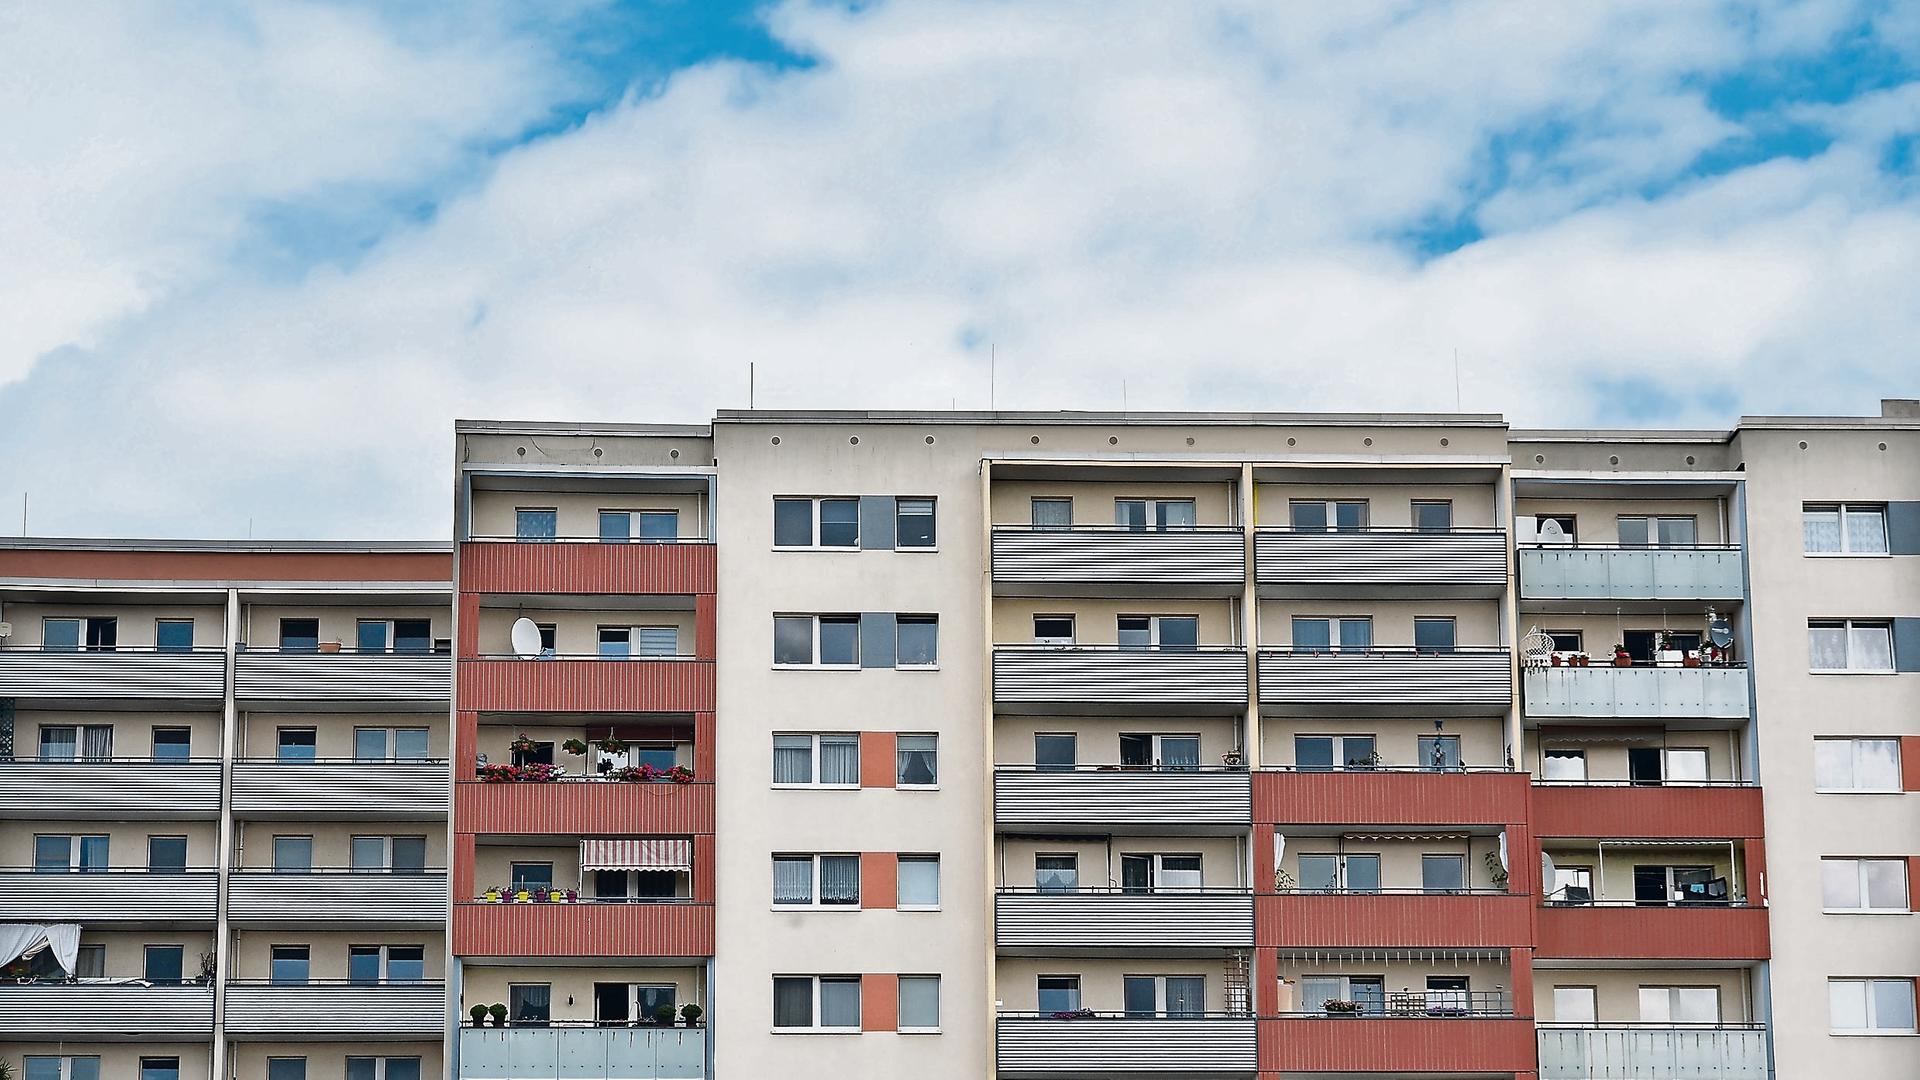 Plattenbauten in der Zossener Straße in Berlin-Hellersdorf: Ein Häuserblock mit Balkonen, die unterschiedliche Farben haben.